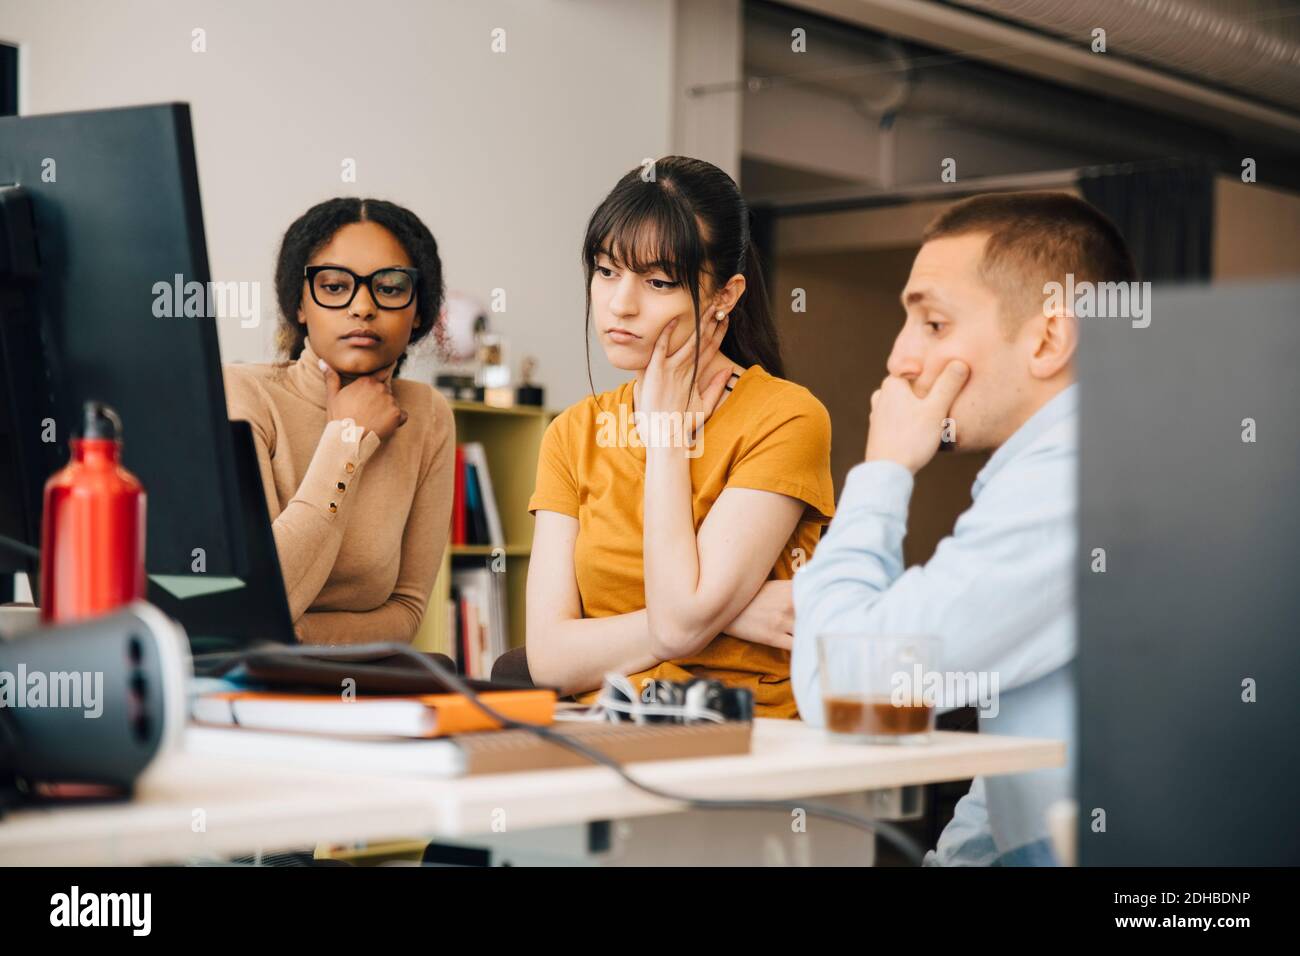 Fokussierte Computerprogrammierer, die Laptop betrachten, während sie zusammen an arbeiten Schreibtisch im Kreativbüro Stockfoto